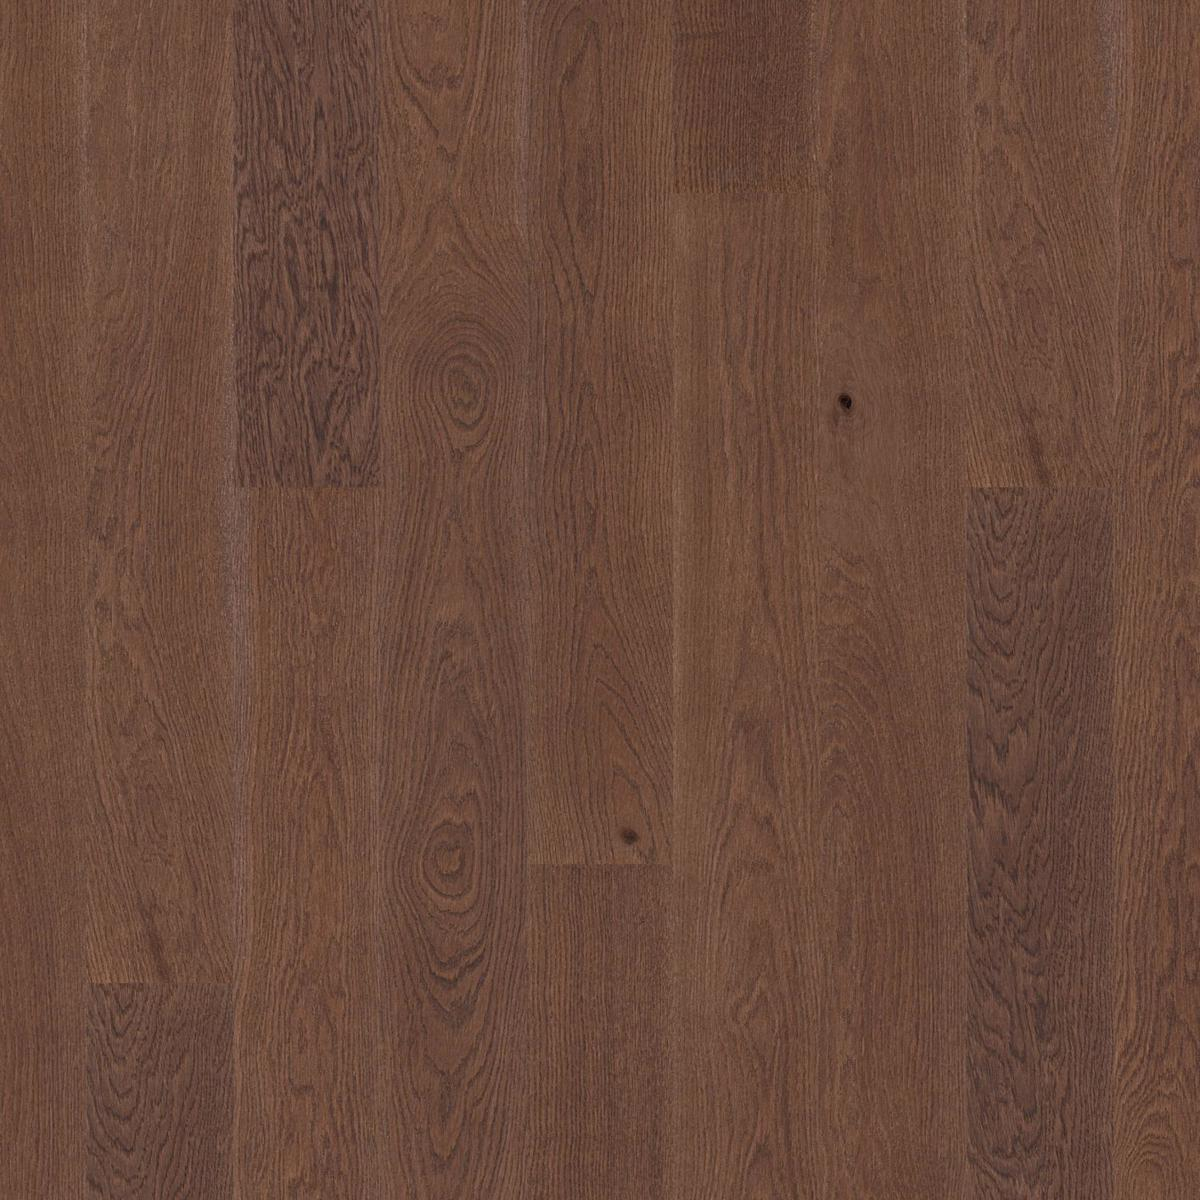 16 Engineered Hardwood Flooring, 5 16 Engineered Hardwood Flooring